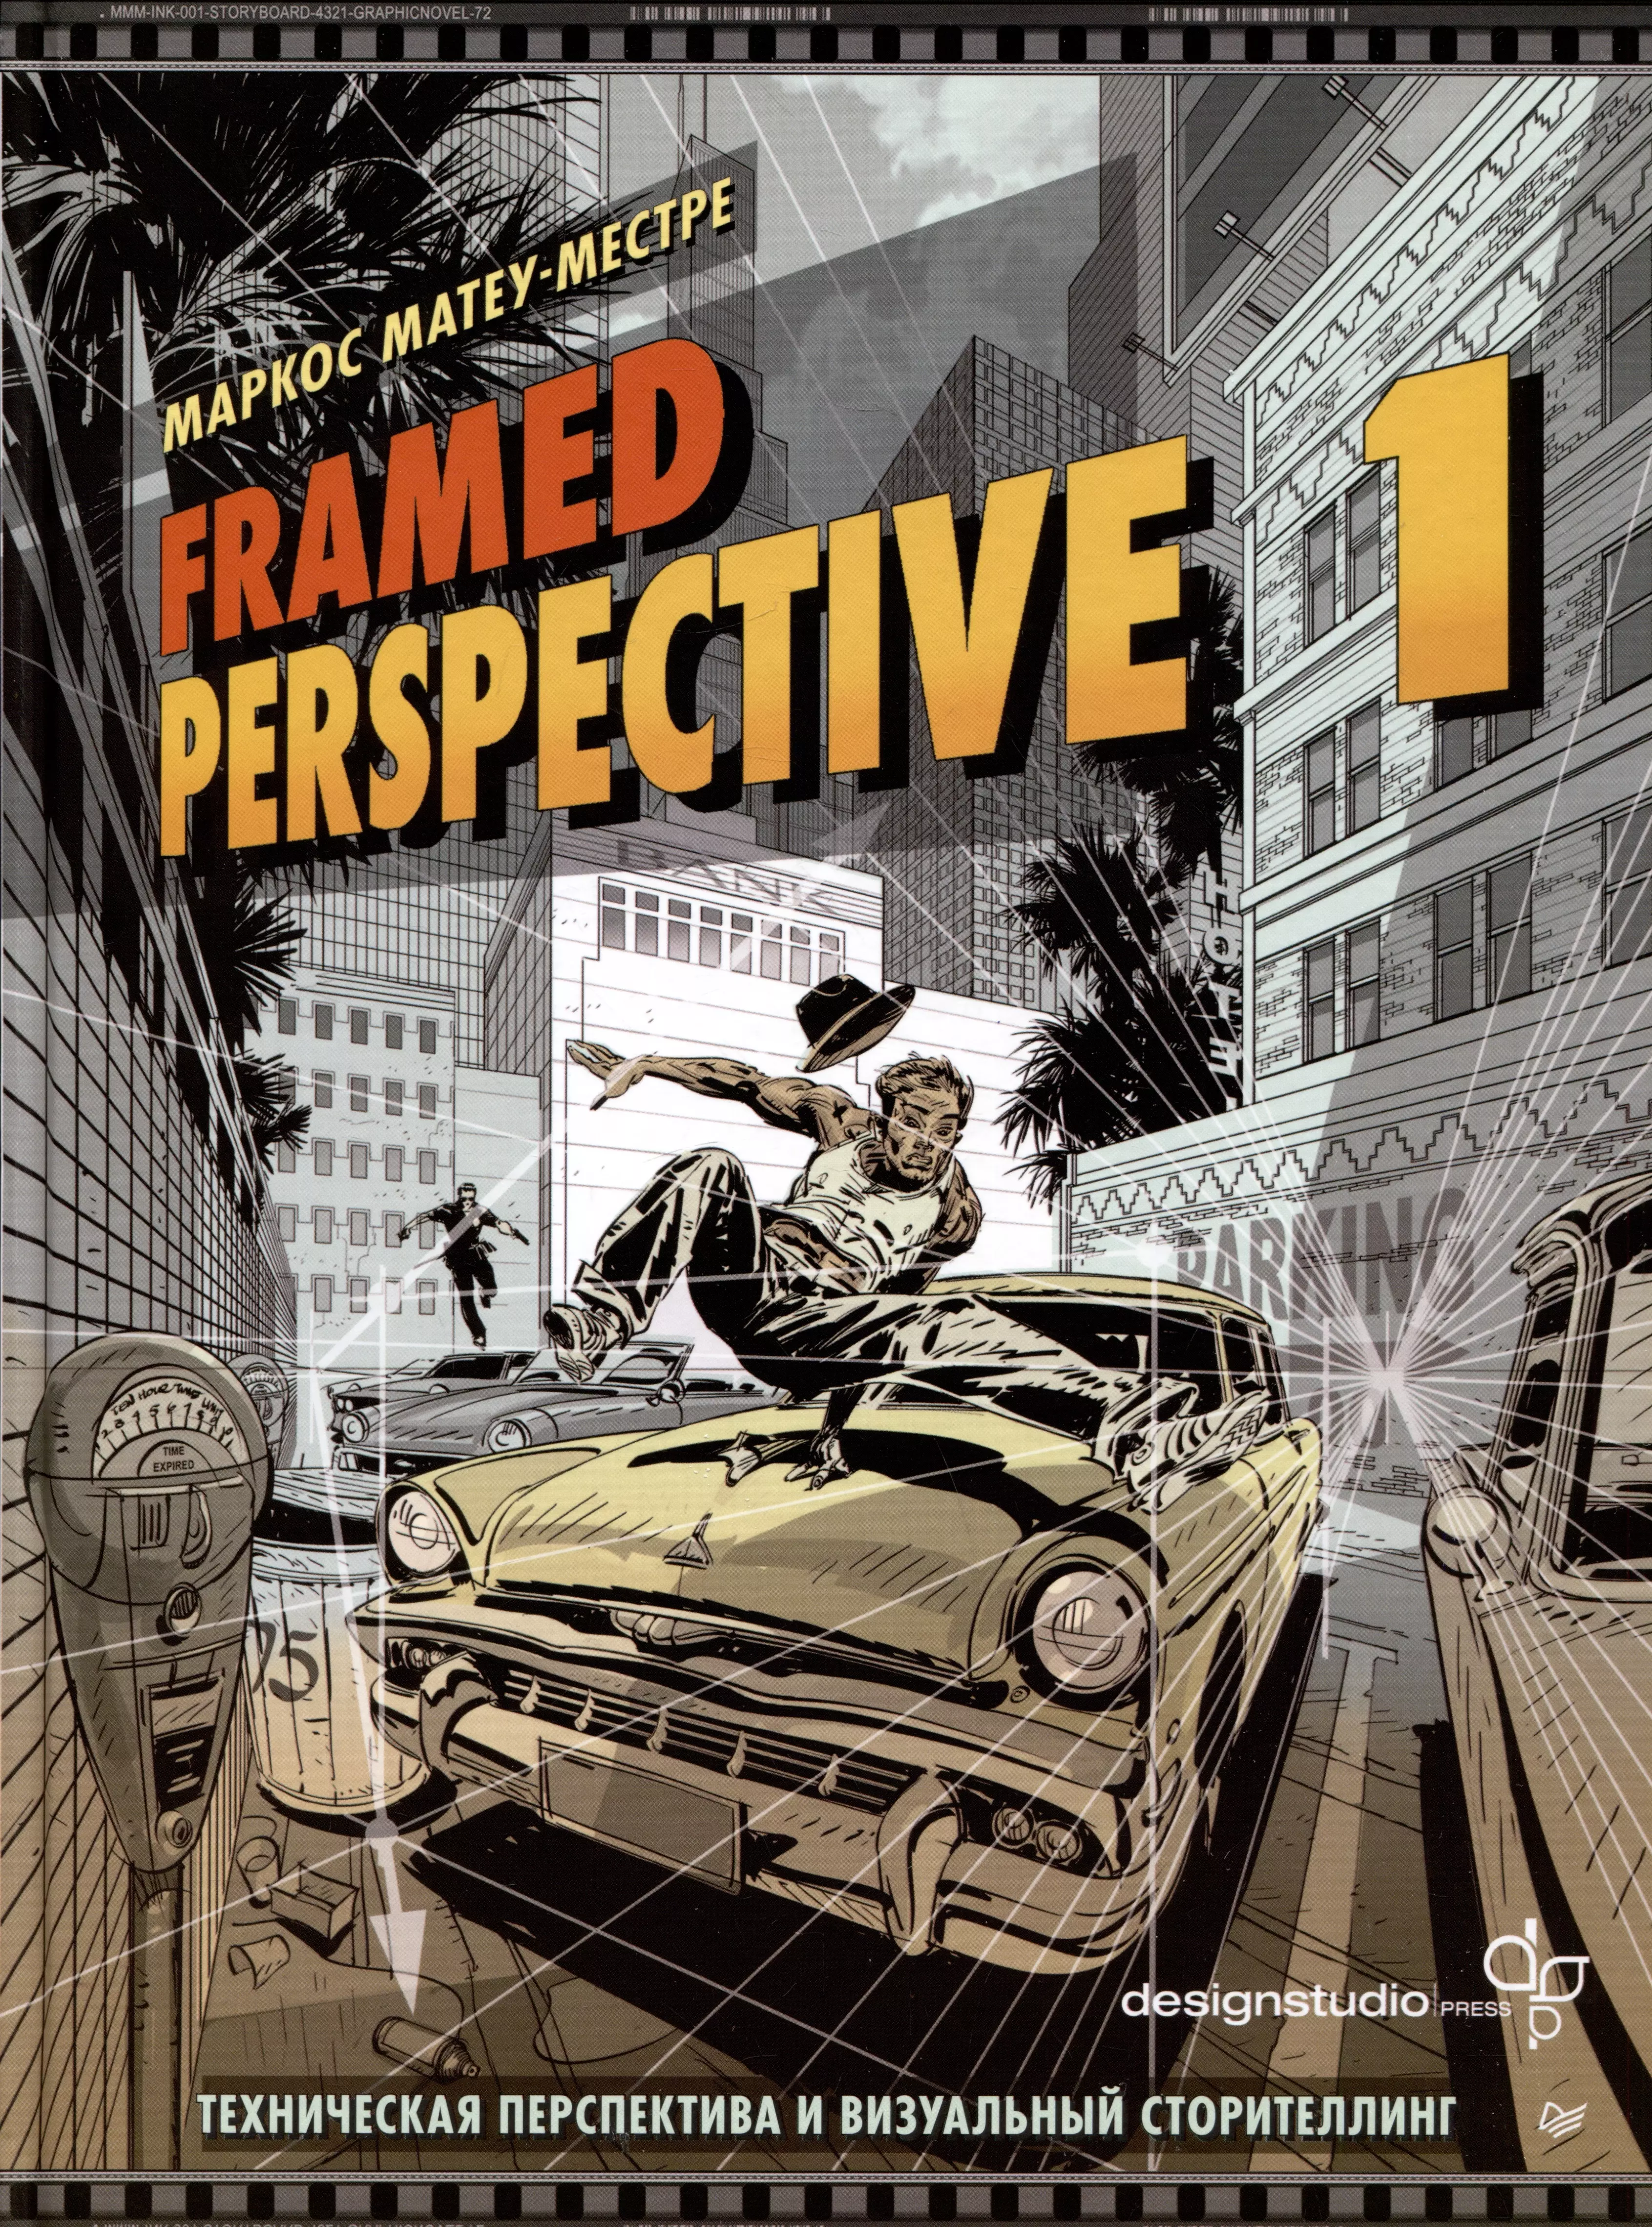 Матеу-Местре Маркос Framed Perspective 1: Техническая перспектива и визуальный сторителлинг комплект мировой бестселлер по технической перспективе